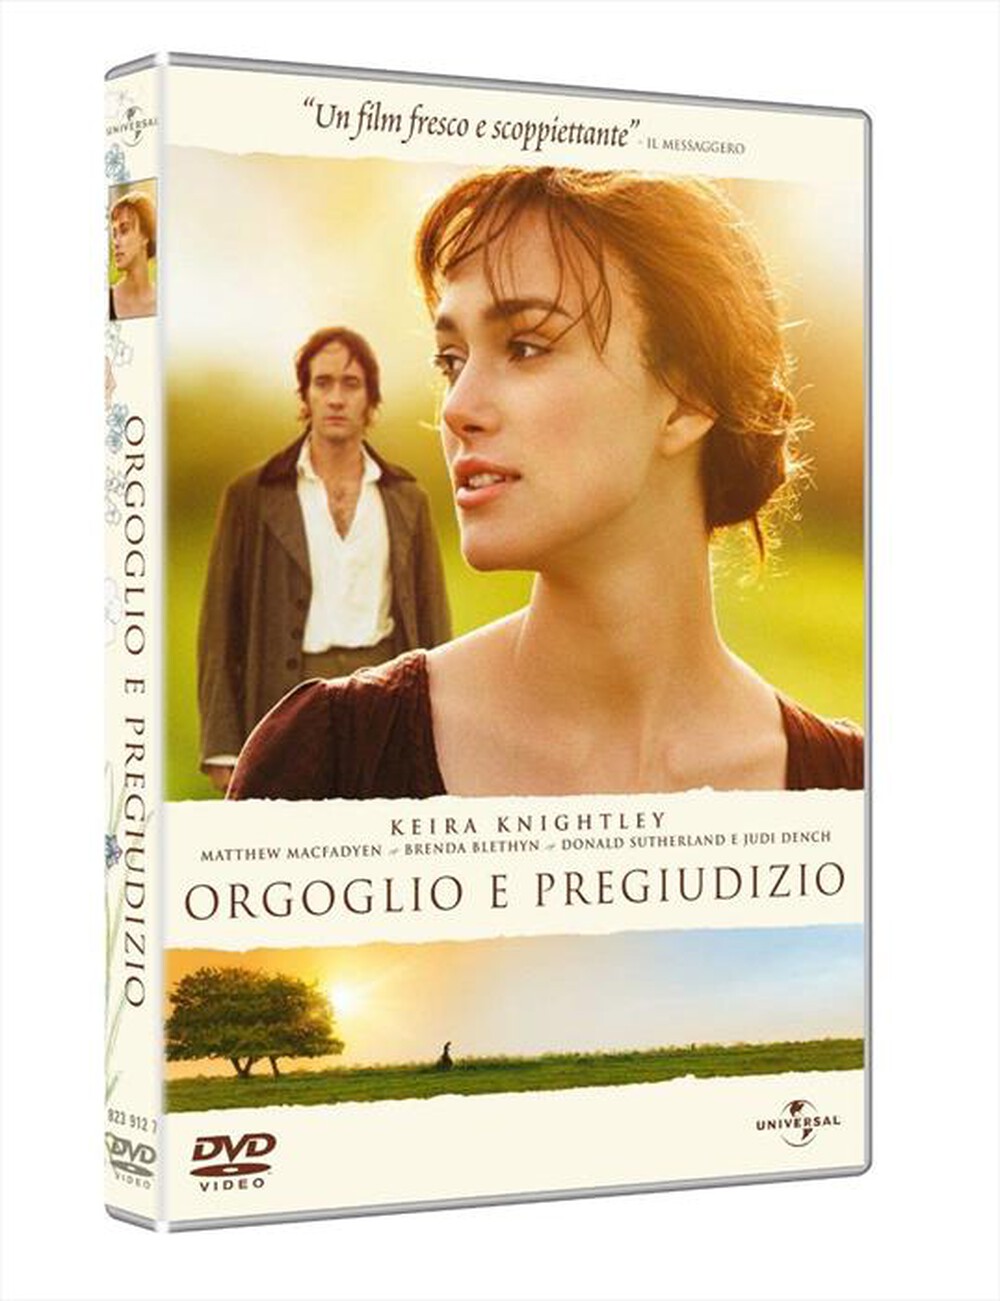 "WARNER HOME VIDEO - Orgoglio E Pregiudizio (2005) - "